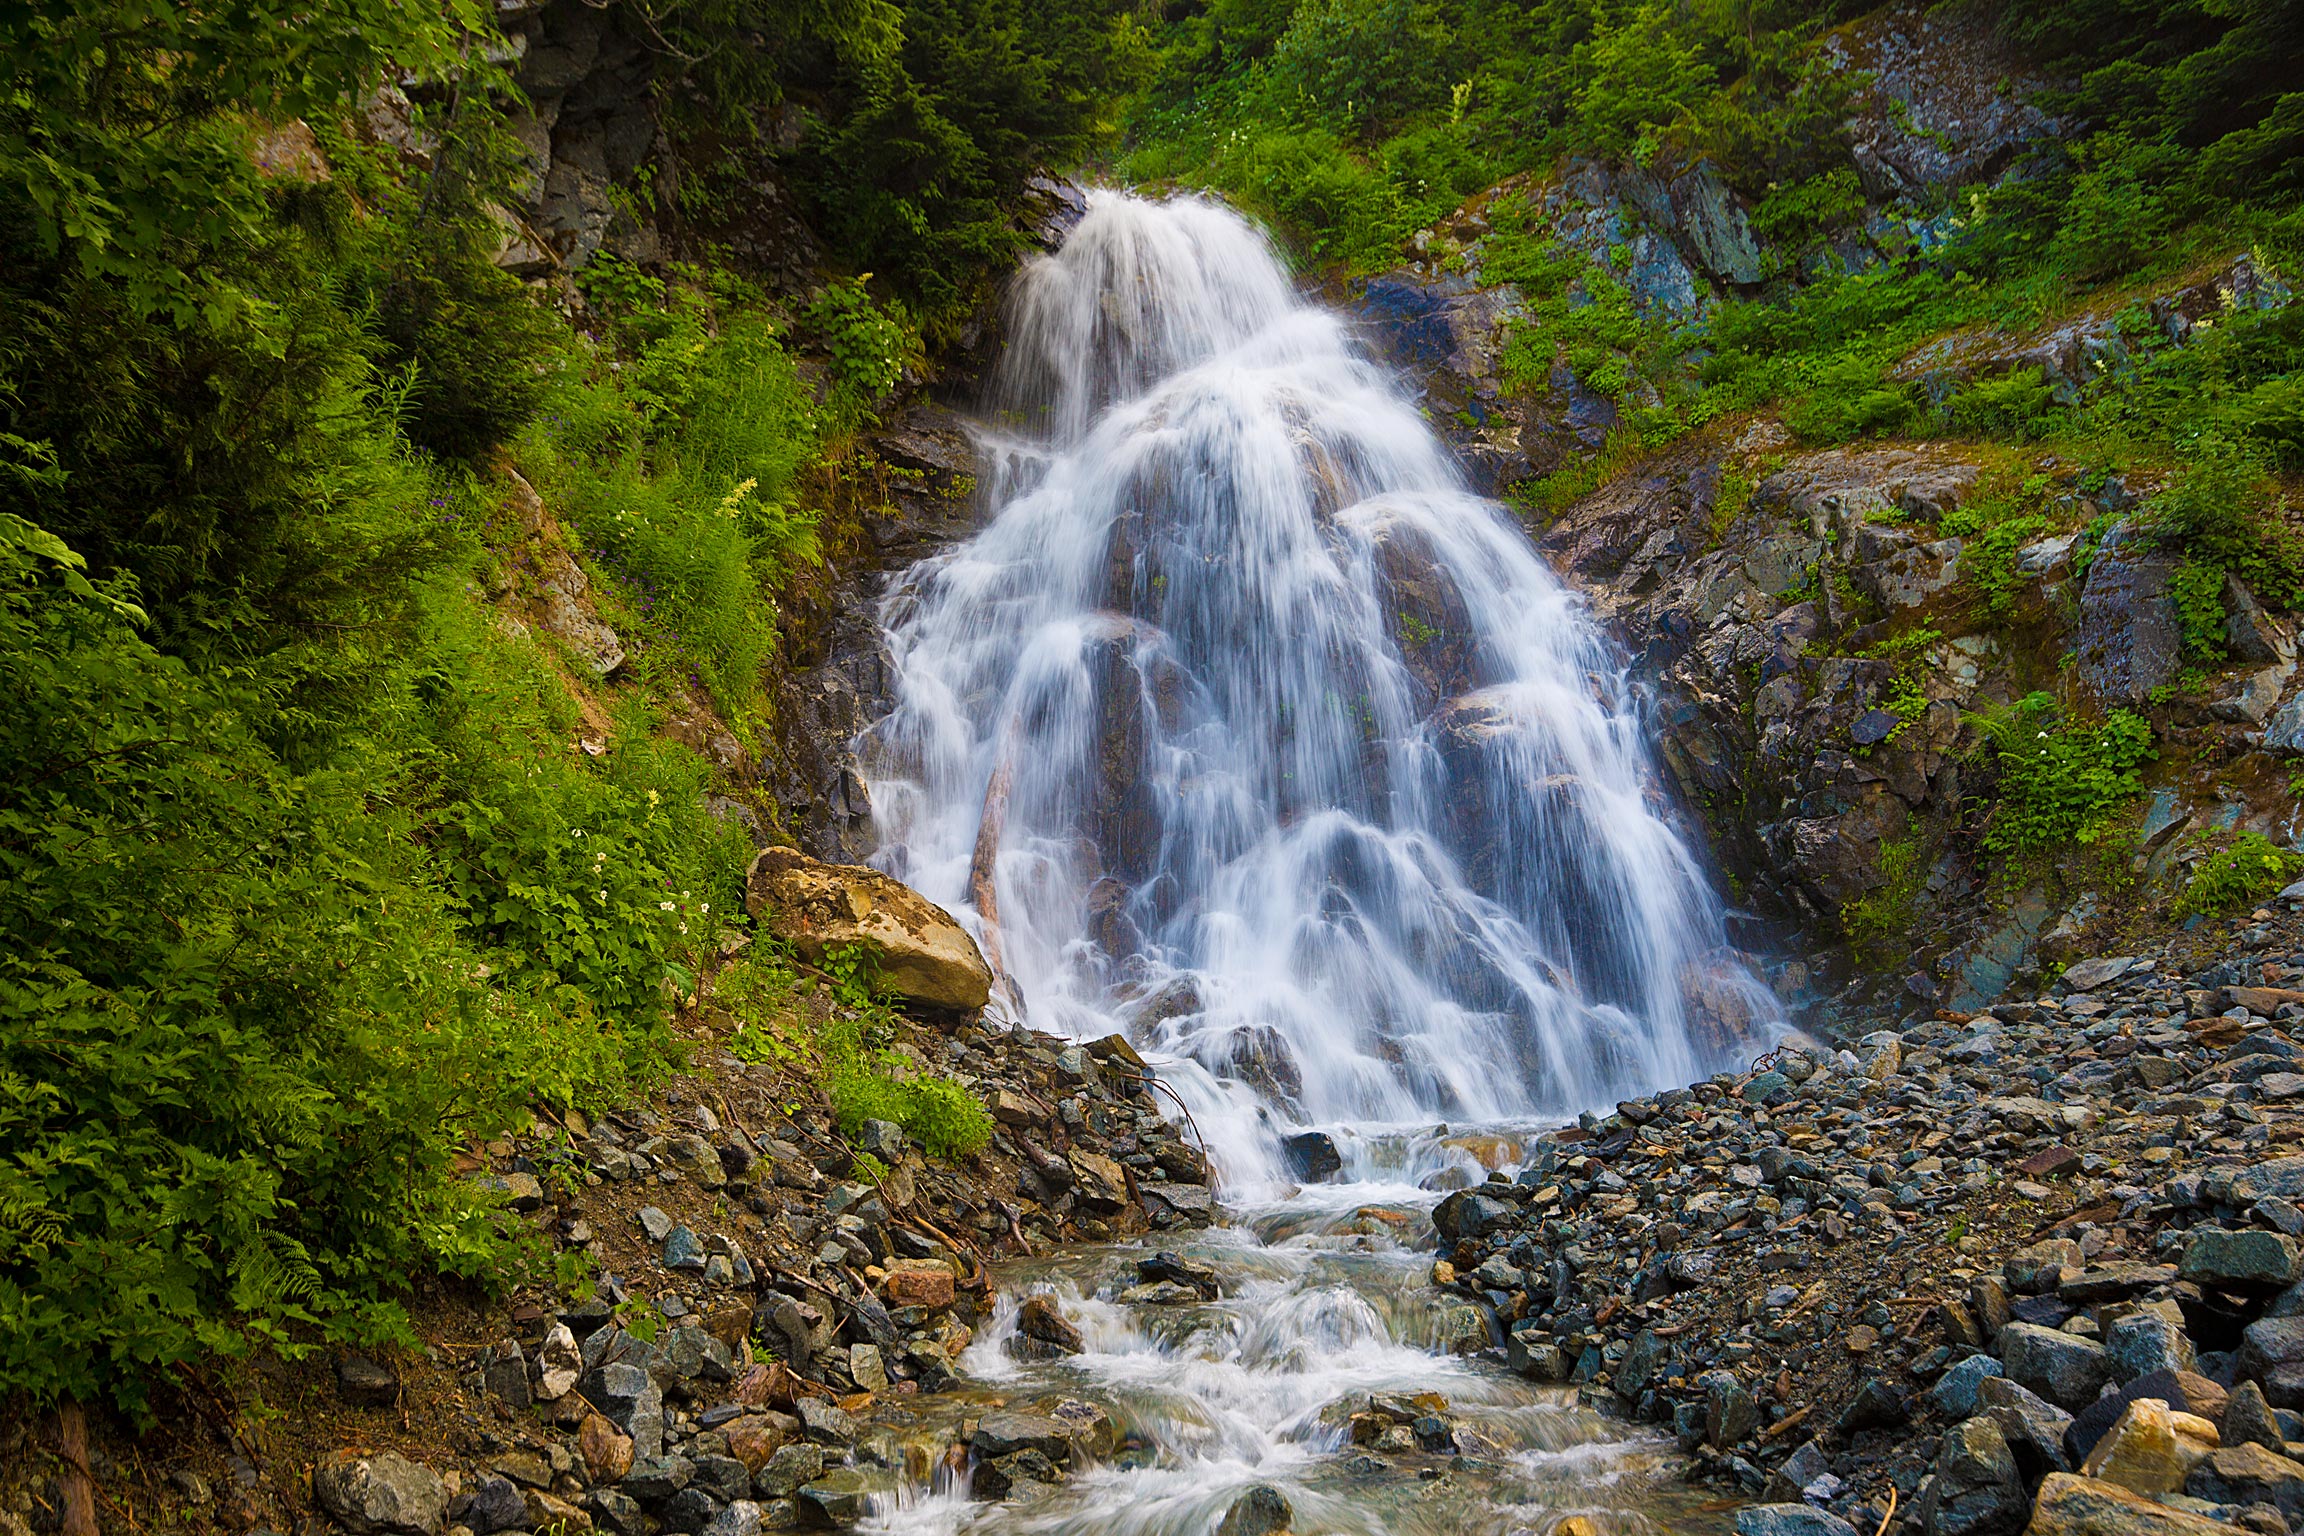 Roaring Waterfall